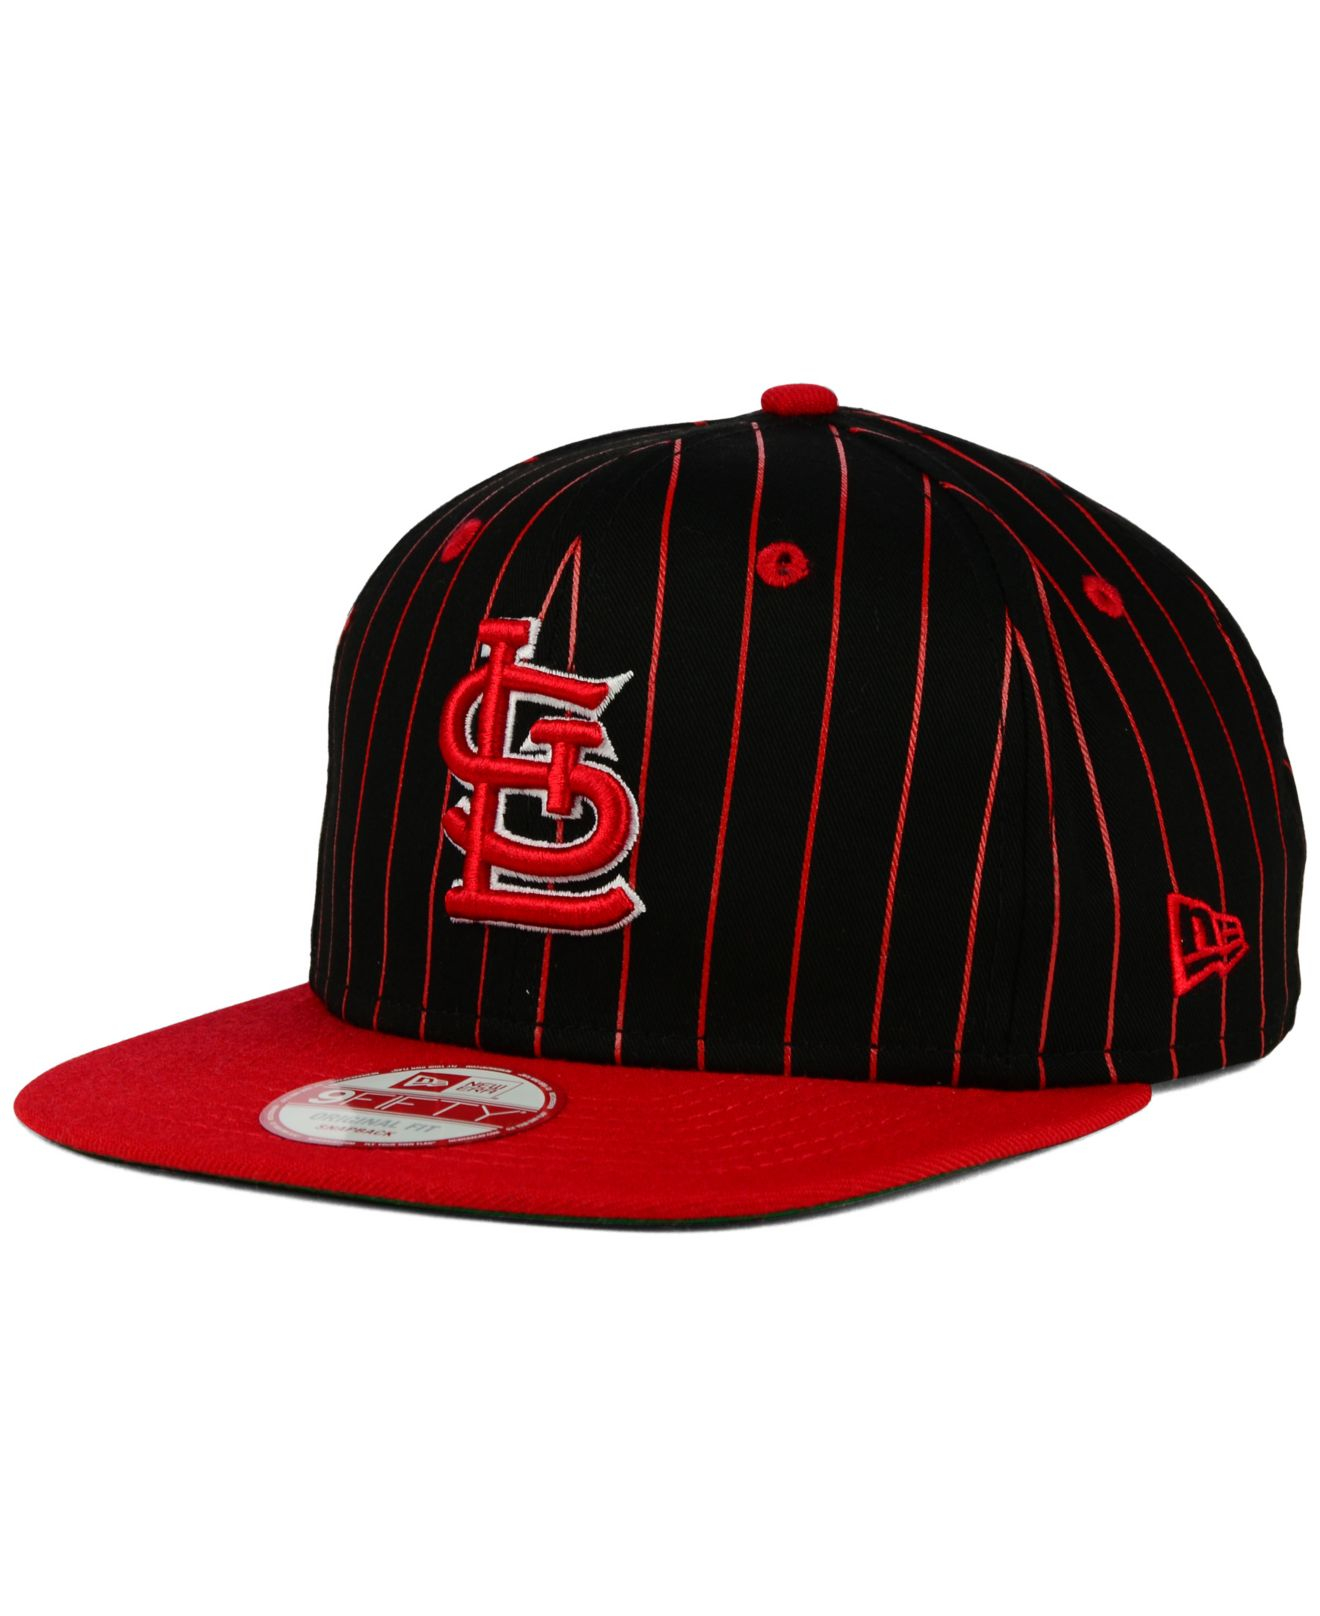 vintage Saint Louis cardinals fitted hat, -size 7